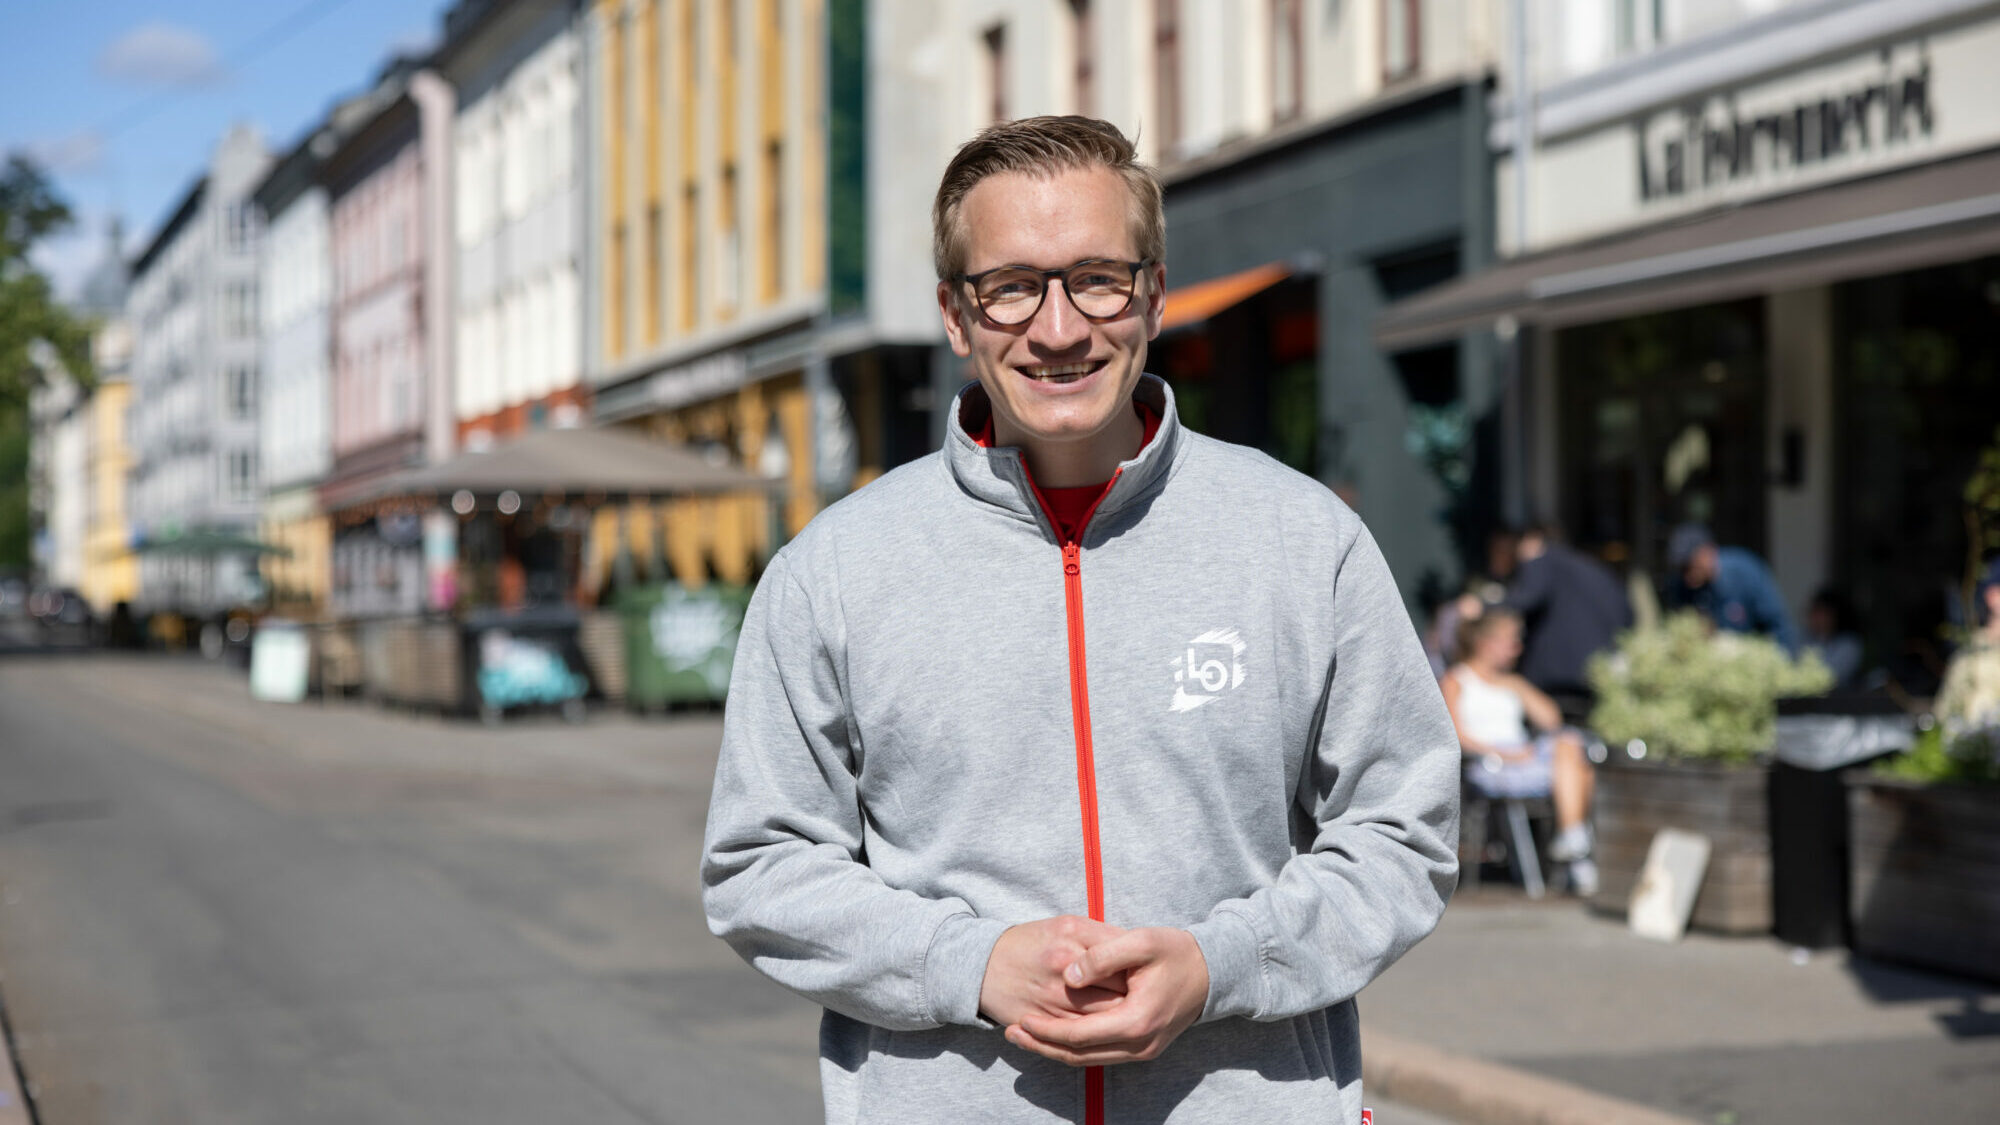 Ung mann med briller og grå jakke smiler, medan han står i ei gate